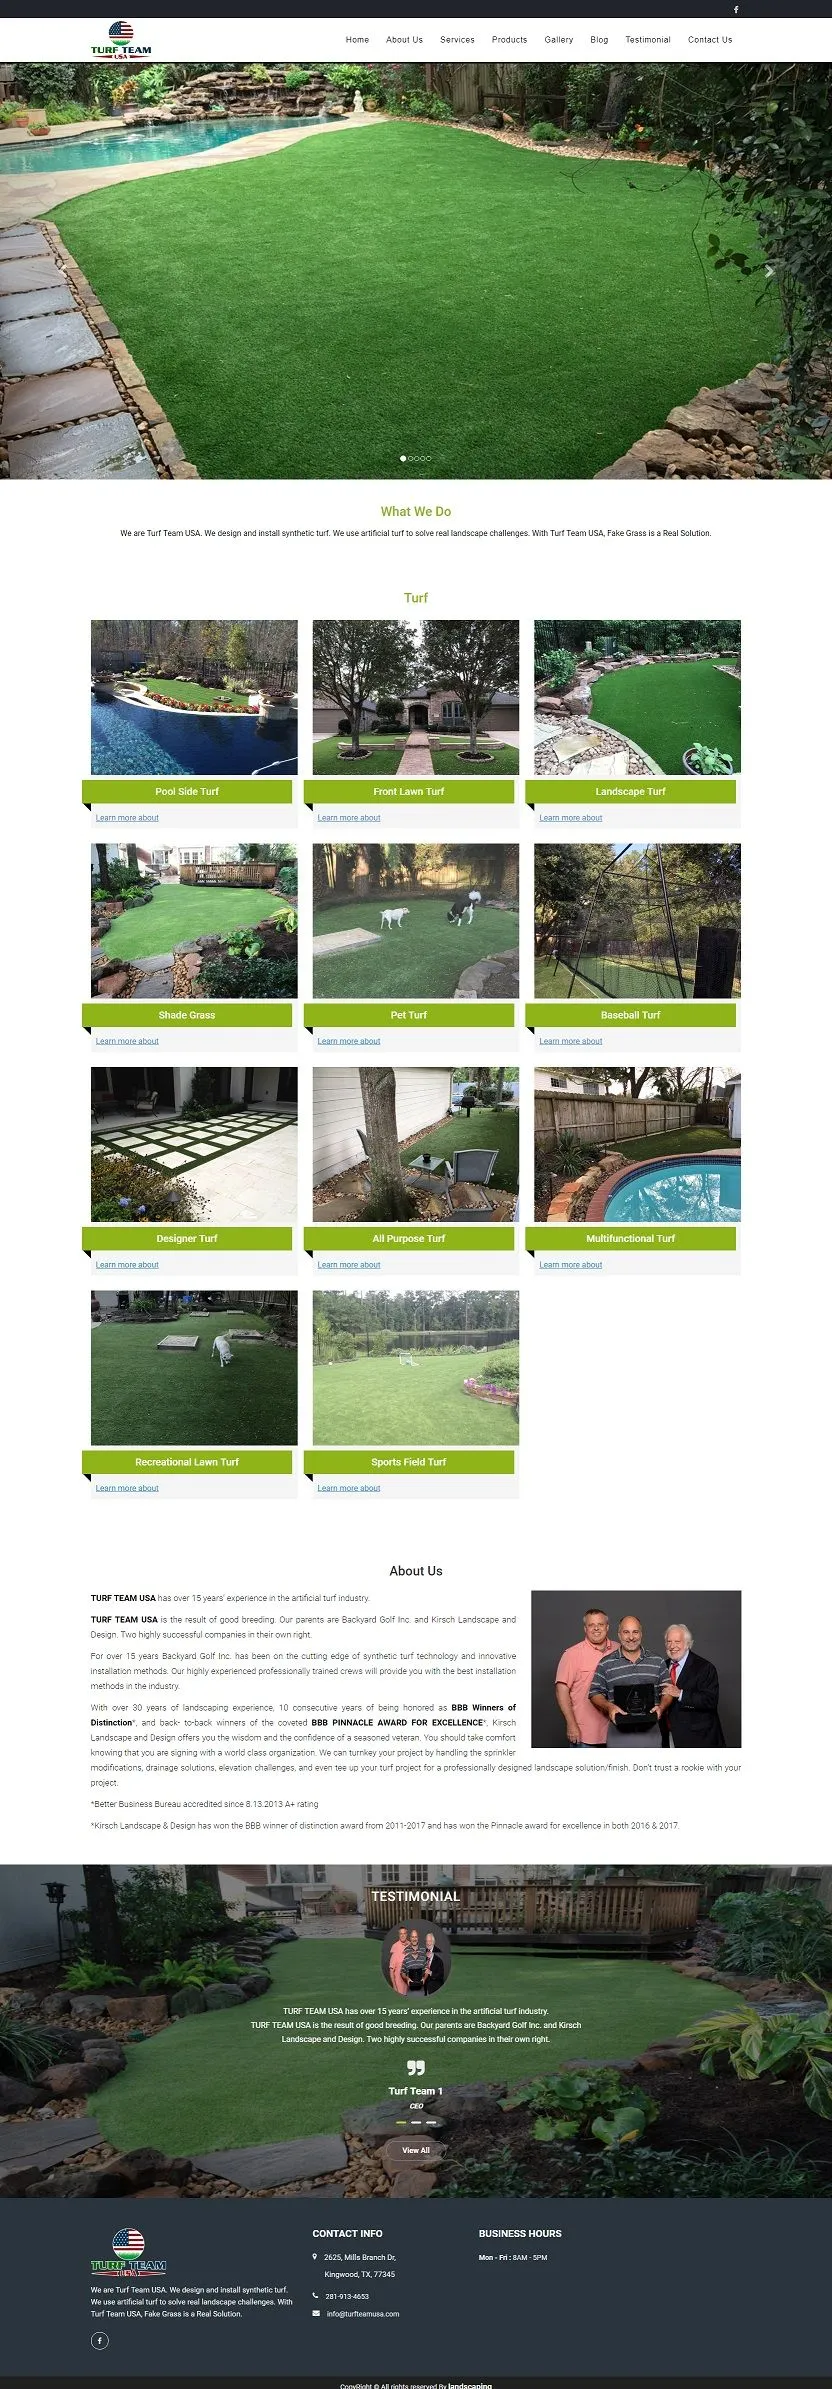 Landscape-artificial-turf-services-web-design-